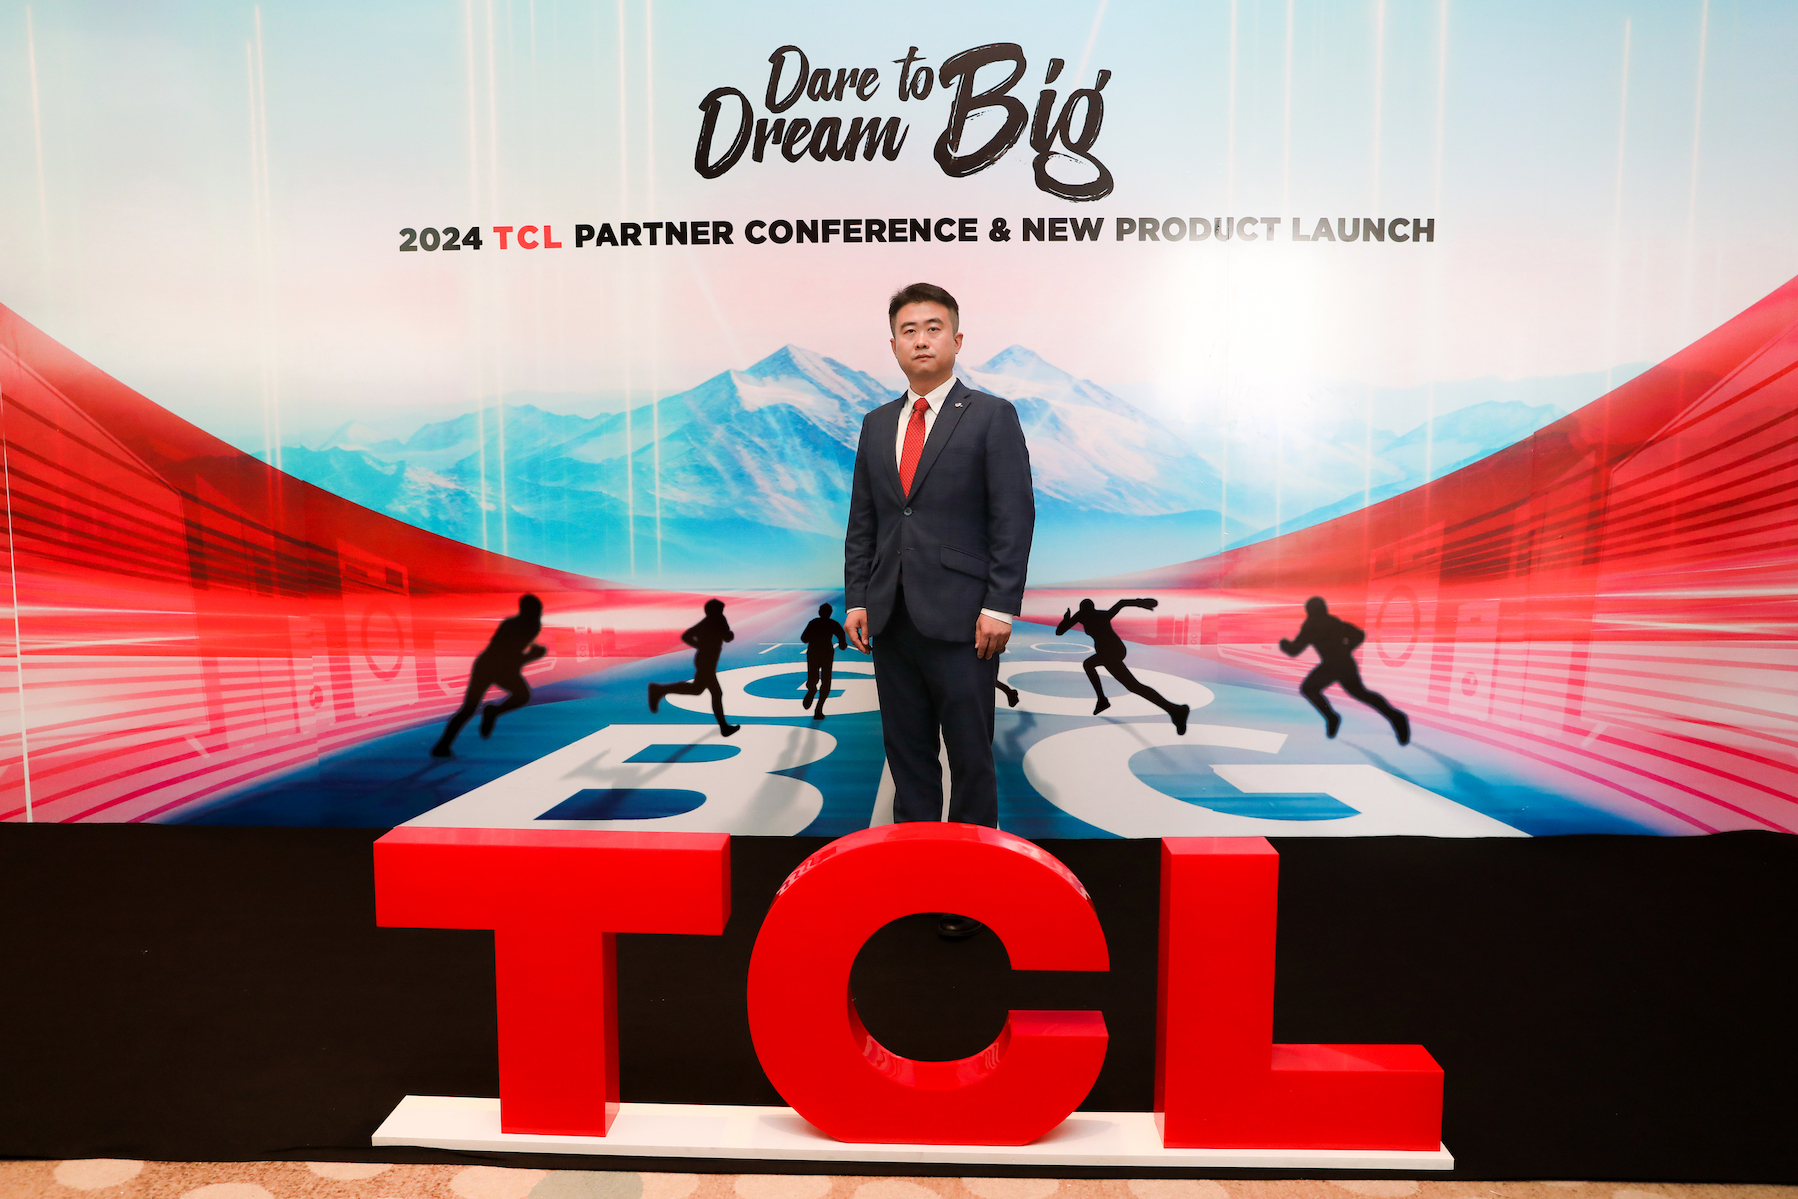 TCL เปิดเกมส์รุก 360 องศา ตั้งเป้าขึ้นเป็น Top 1  แบรนด์เครื่องใช้ไฟฟ้าภายใน 5 ปีปี 2567 เล็งเปิดตัว 4 สินค้าใหม่  พร้อมขยายตลาดสู่กลุ่ม IT